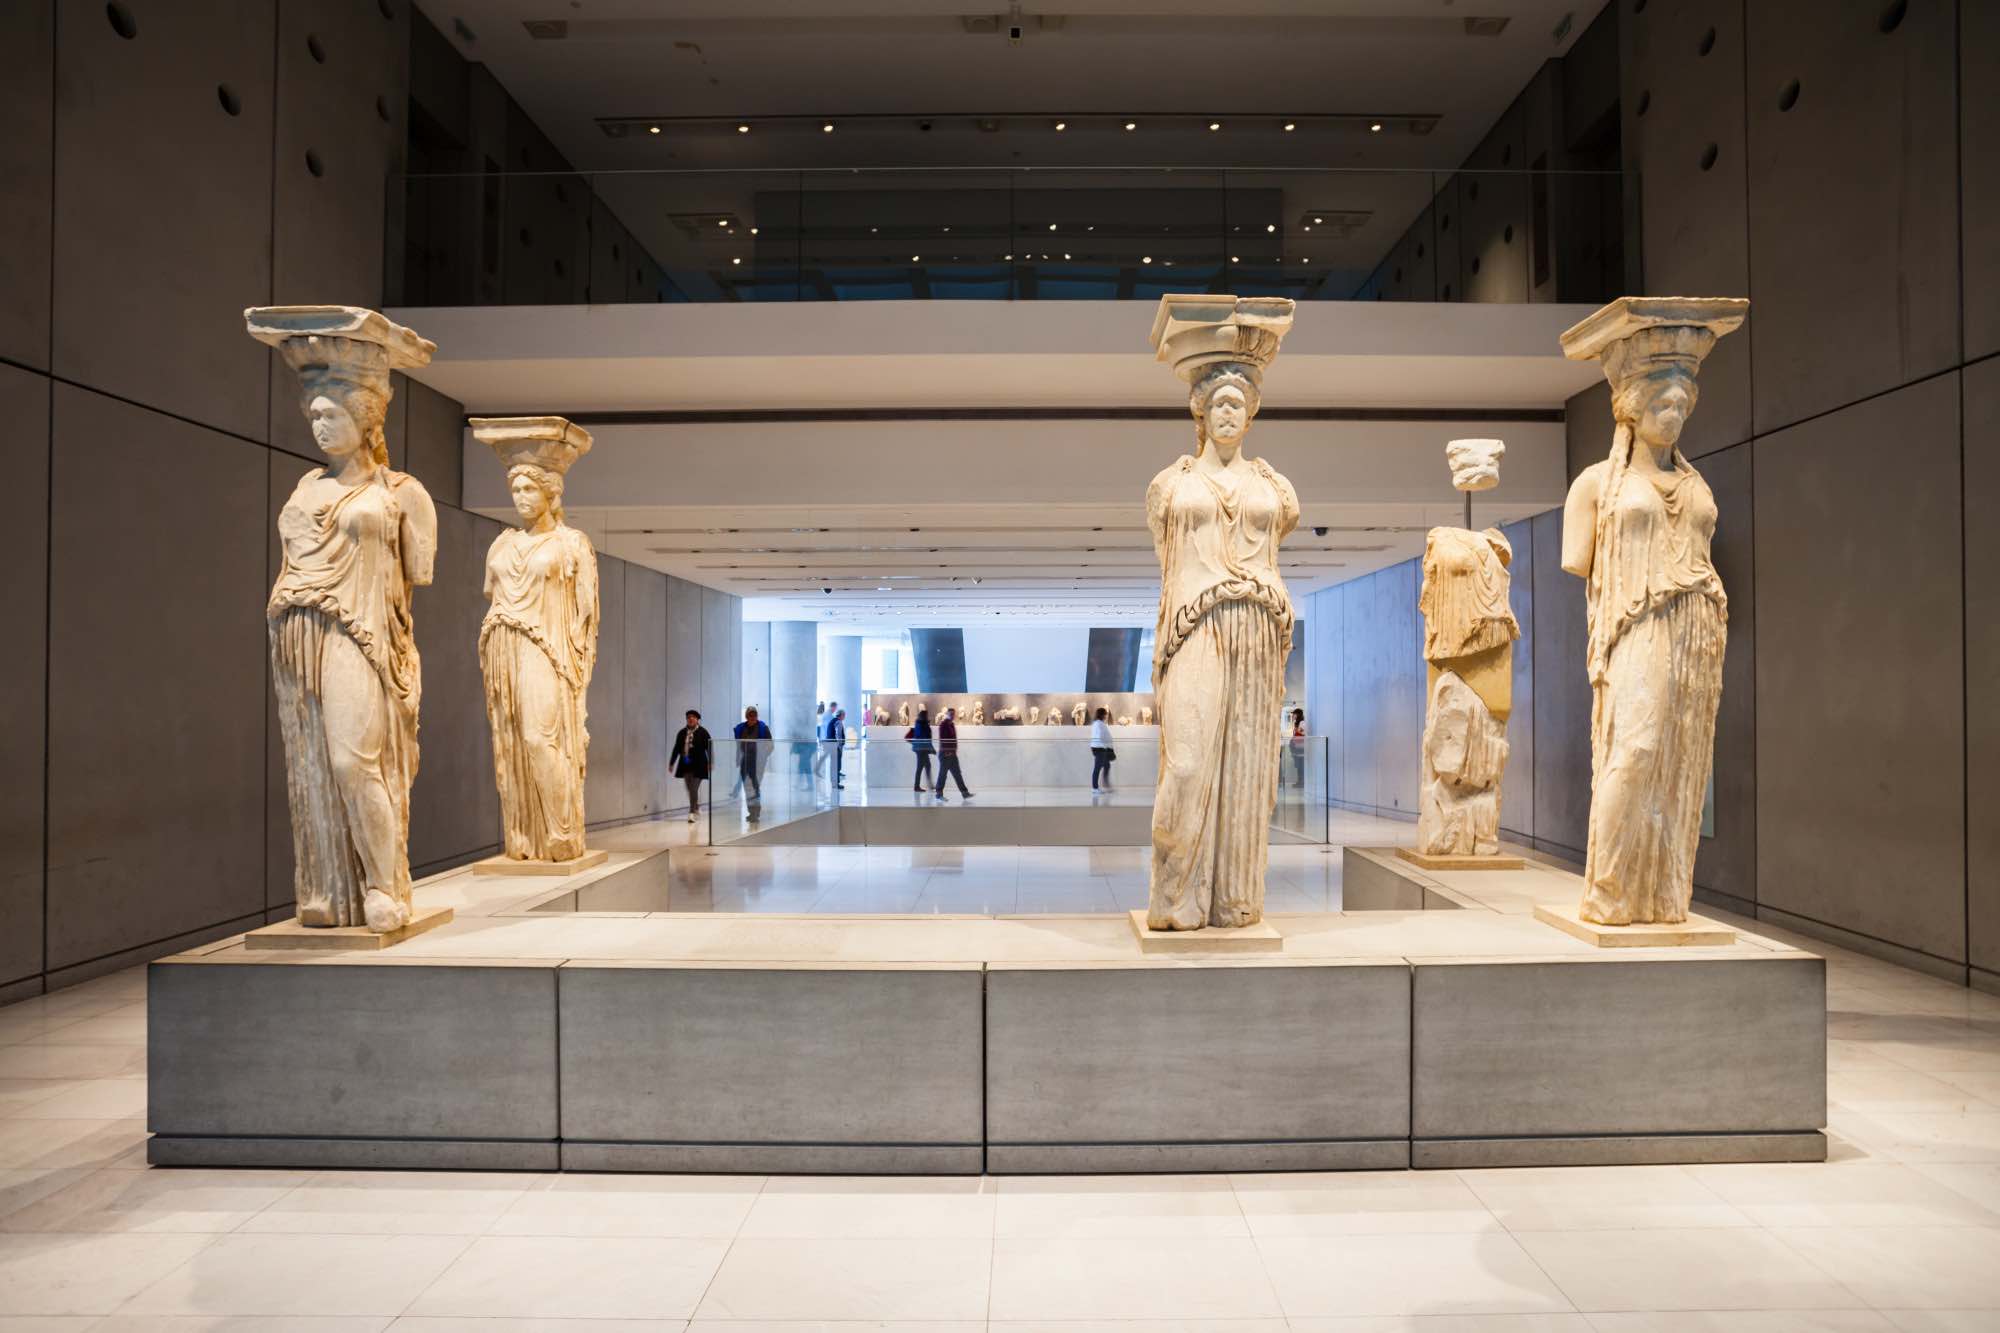 المسؤول يؤكد: اقتربنا من إنهاء جميع الأعمال في المتحف اليوناني الروماني بالإسكندرية